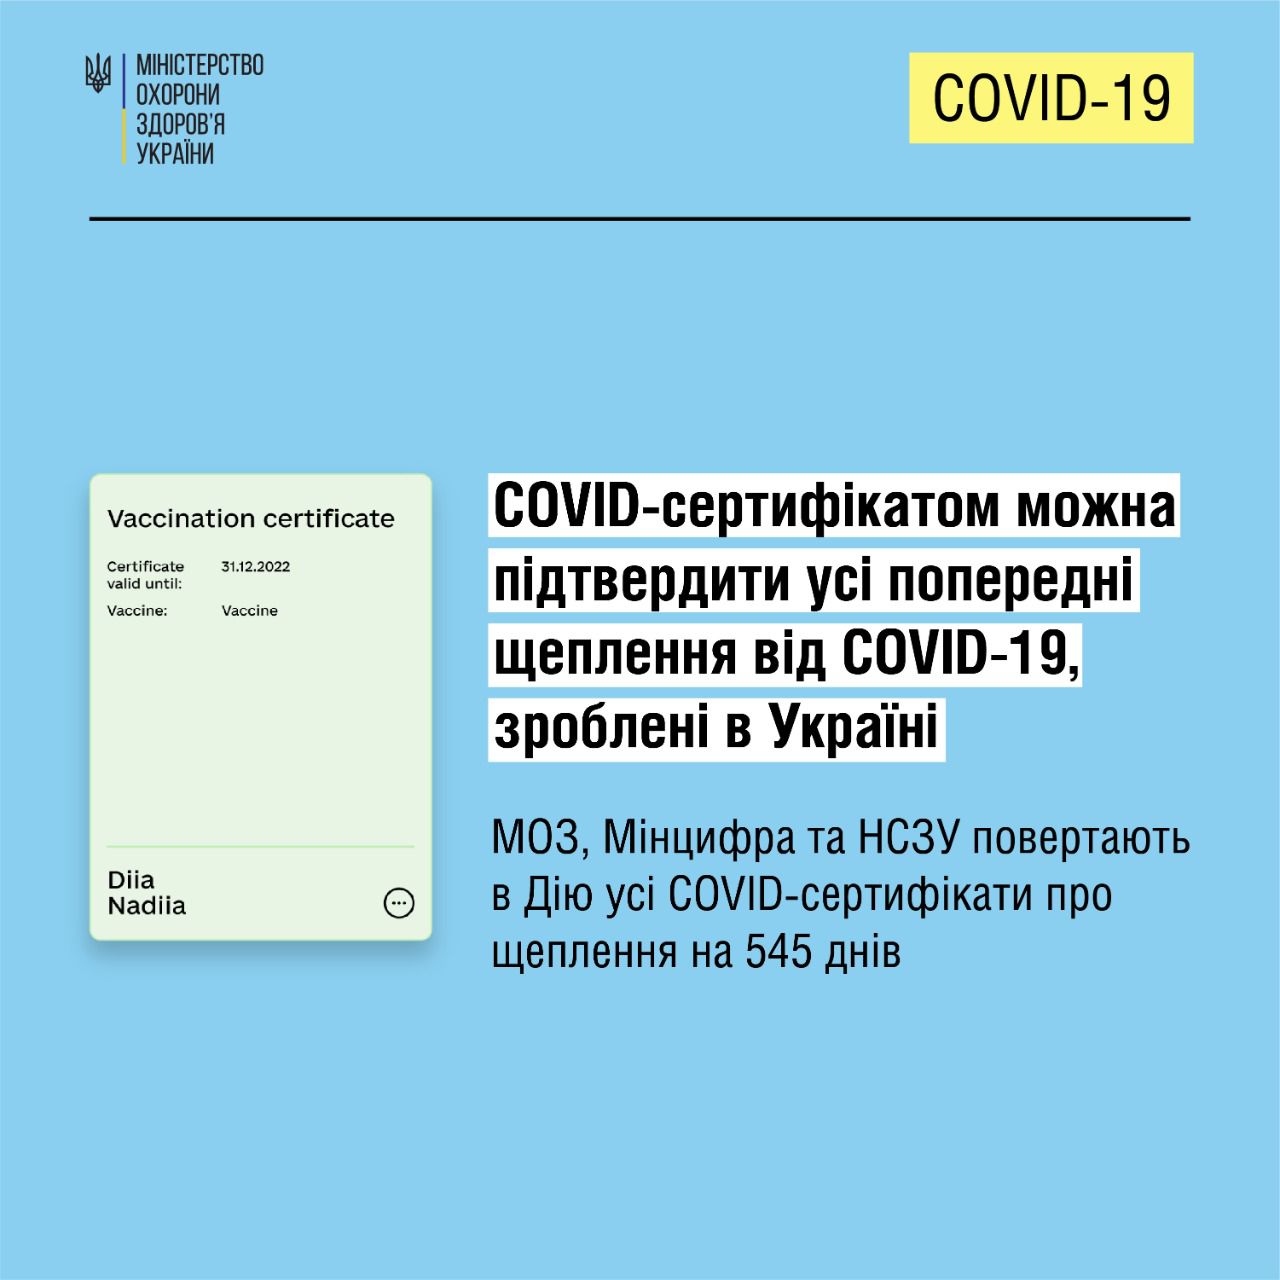 COVID-сертифікат у Дії відображатиметься 1,5 року від дати щеплення